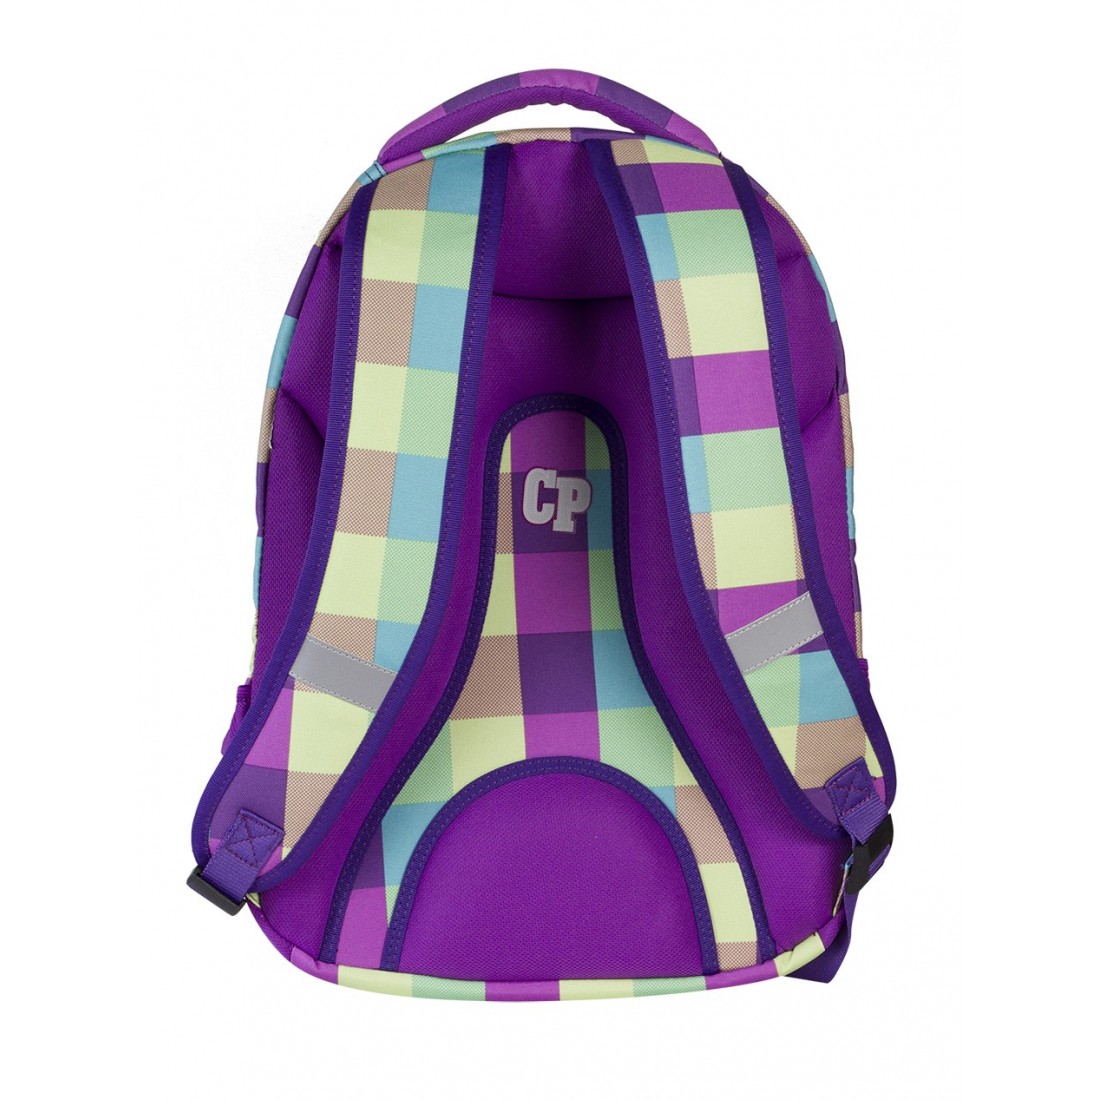 Plecak młodzieżowy CoolPack CP fioletowy w kratkę - 2w1 COMBO PURPLE PASTEL 482 - plecak-tornister.pl